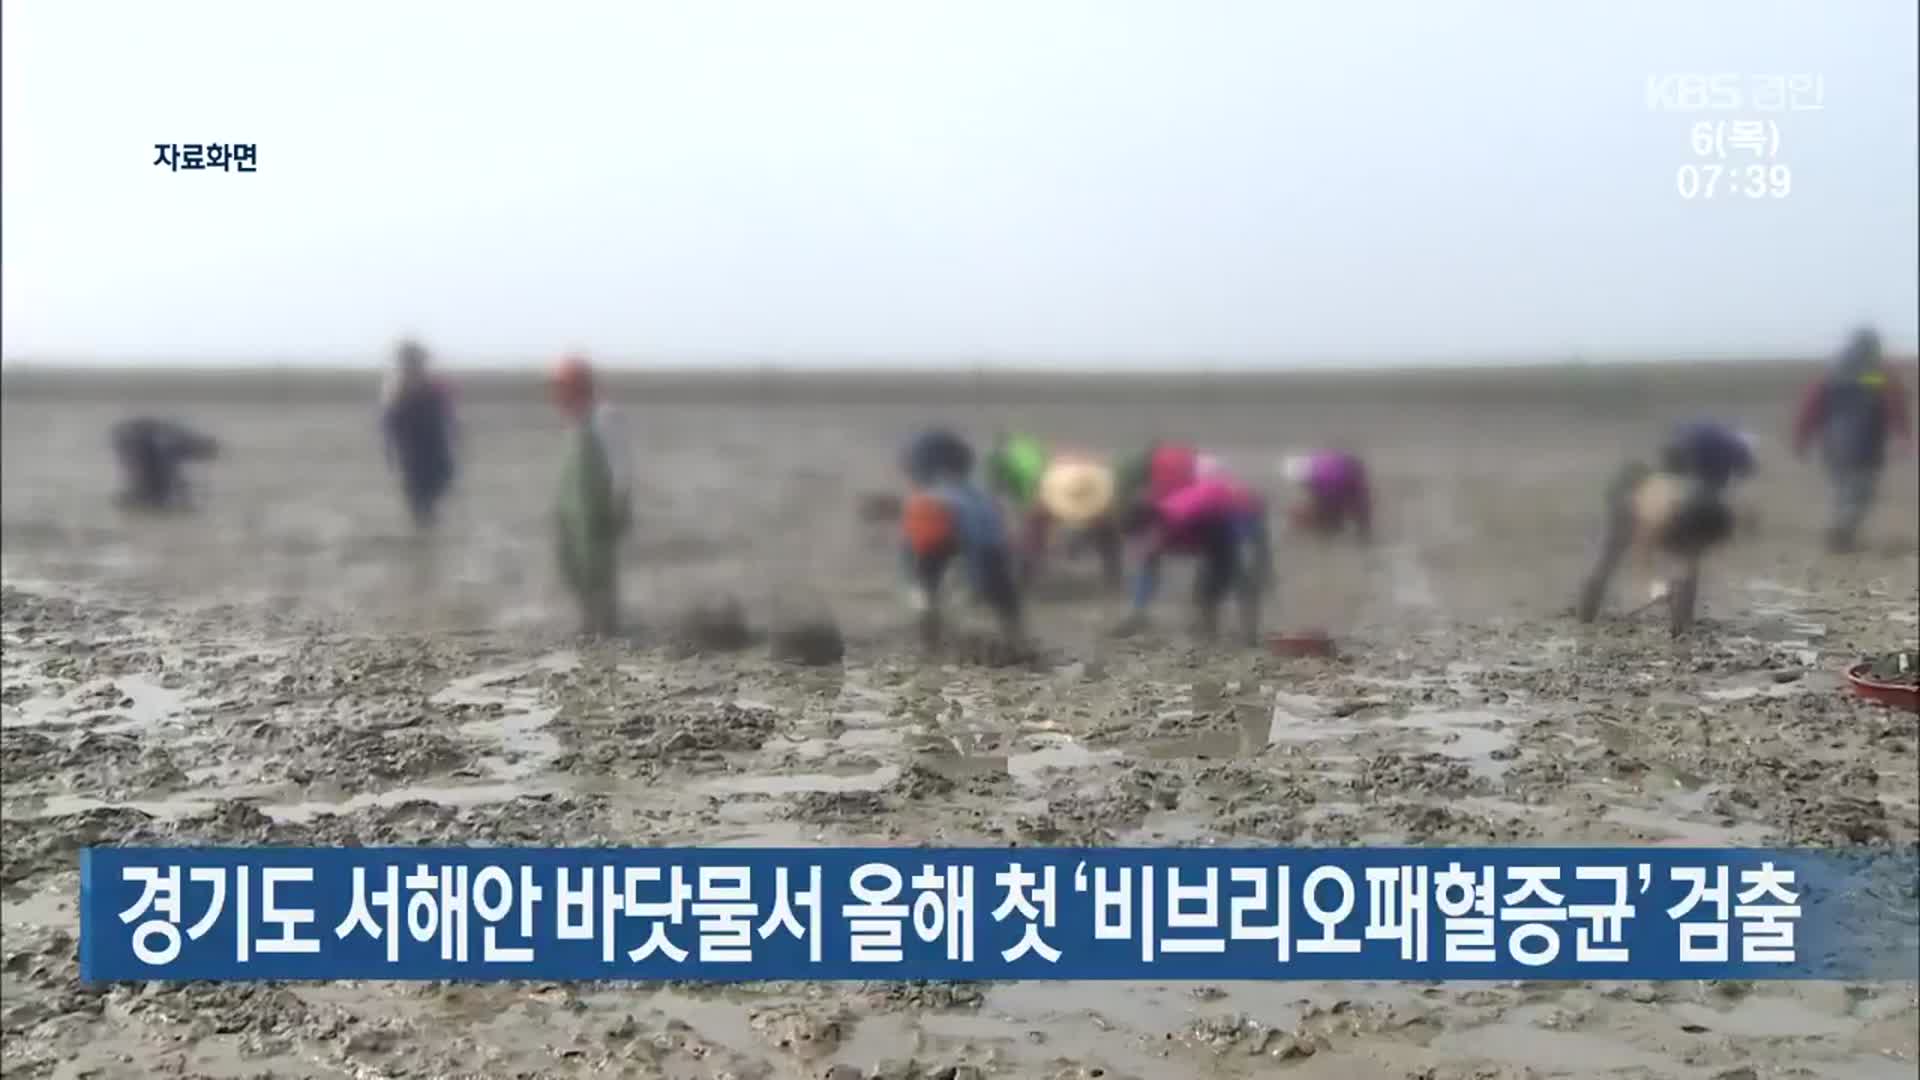 경기도 서해안 바닷물서 올해 첫 ‘비브리오패혈증균’ 검출